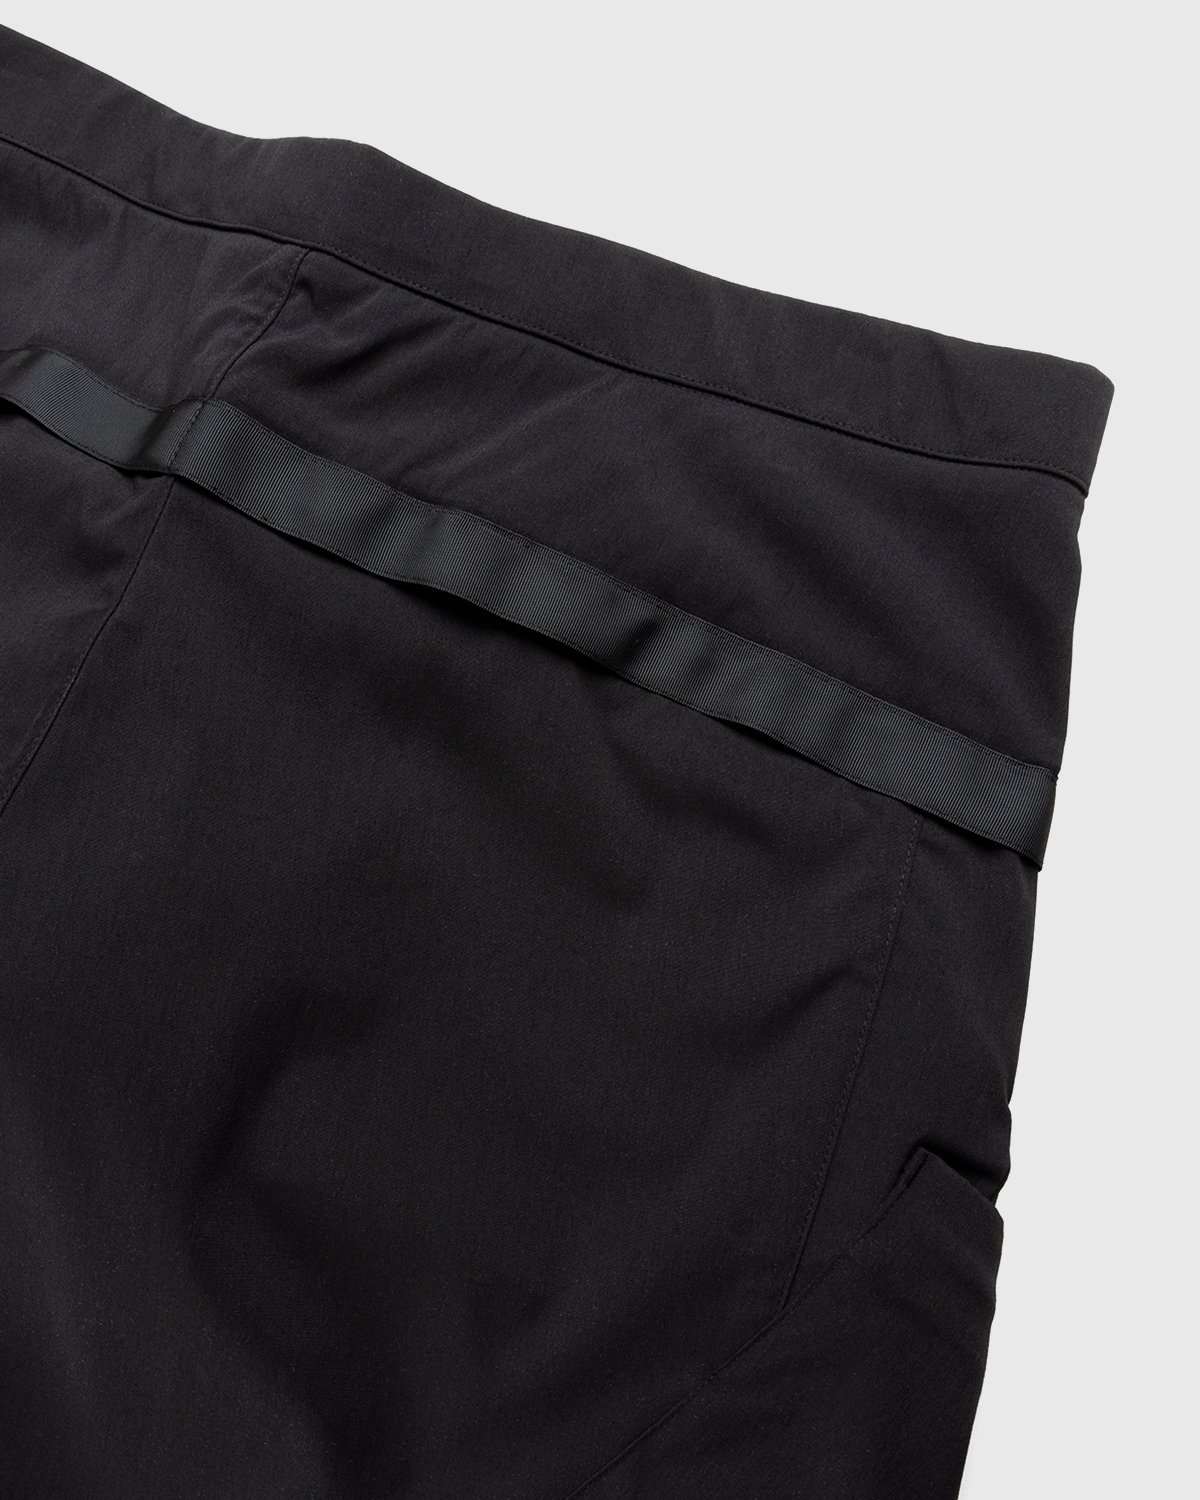 ACRONYM - SP29-M Cargo Shorts Black - Clothing - Black - Image 3